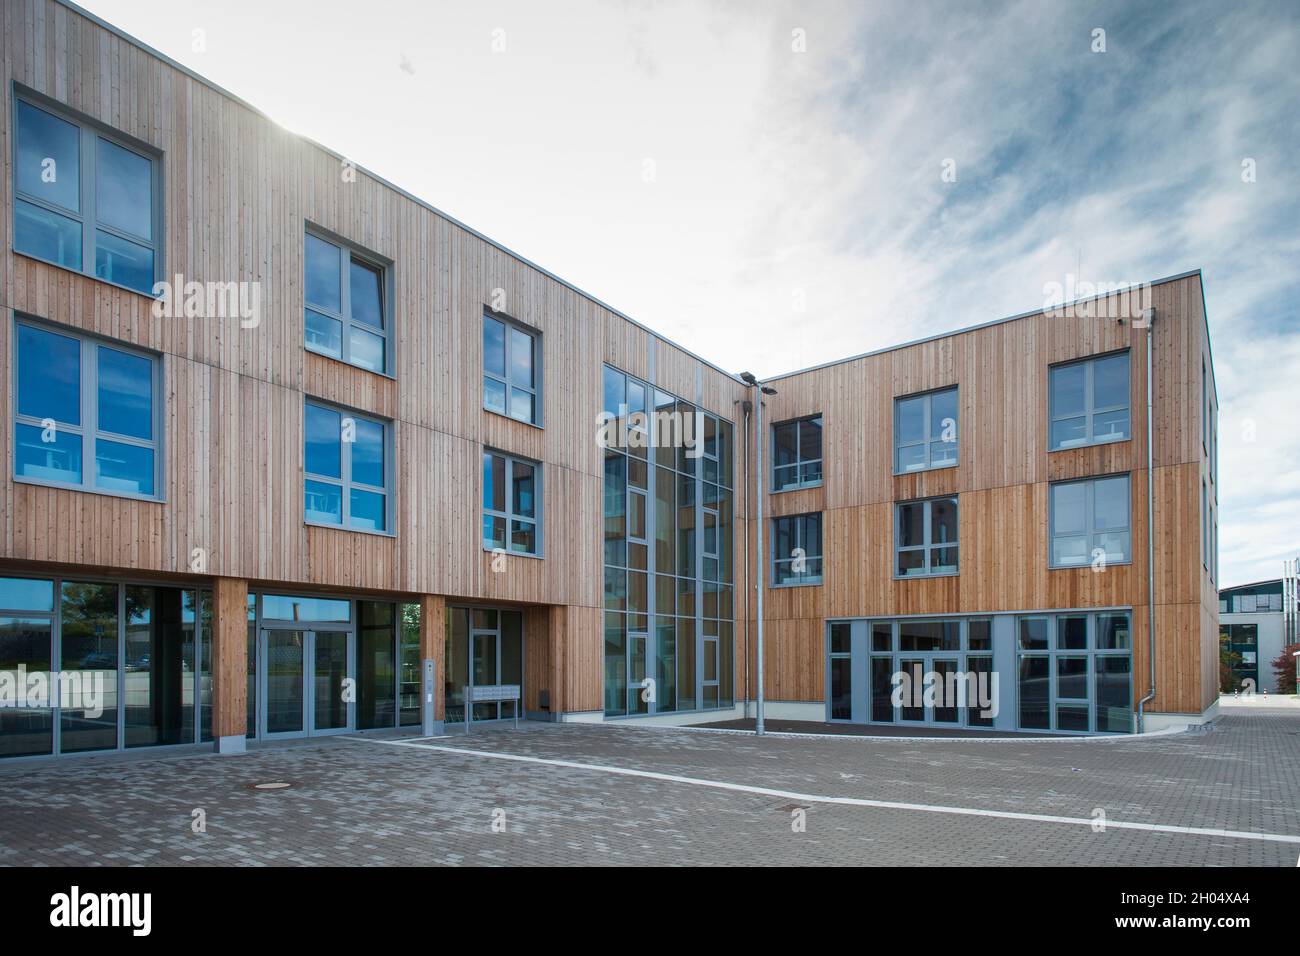 Le bâtiment d'extension 'Zukunftsraum' de l'université privée Witten Herdecke dans la construction durable de bois, Witten, Rhénanie-du-Nord-Westphalie, GE Banque D'Images